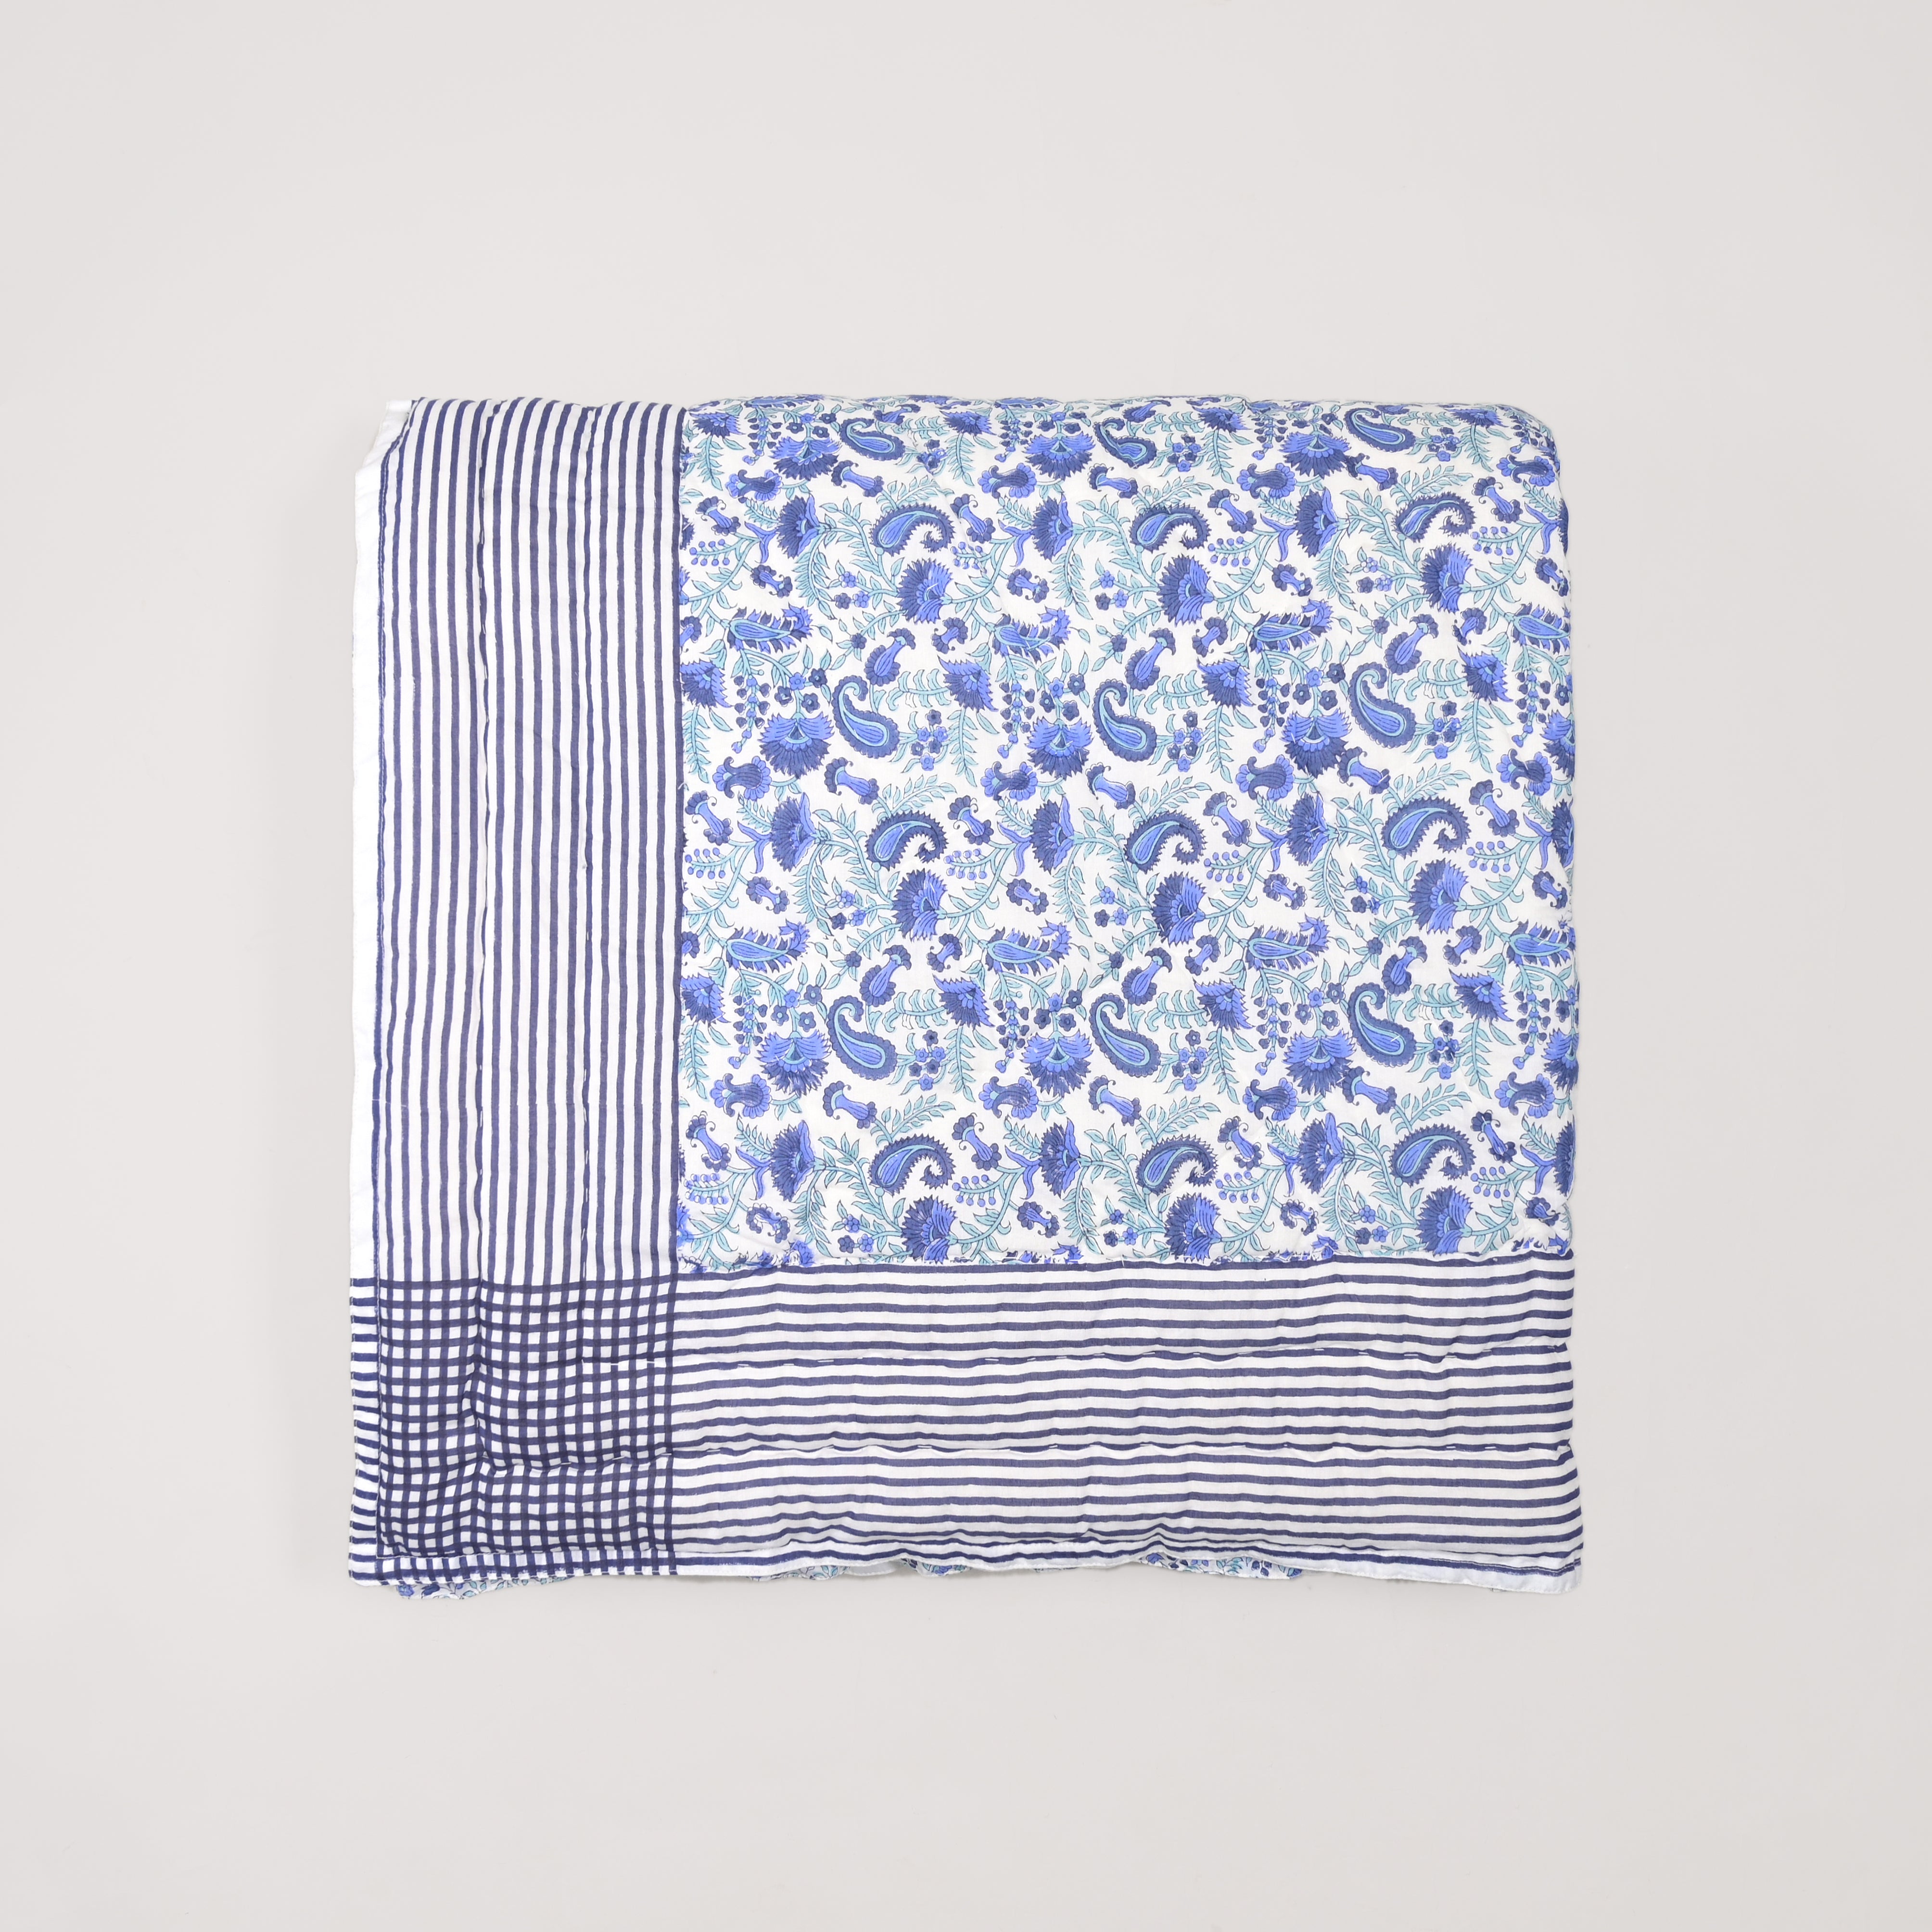 Anjuman Blue Block Printed Reversible Quilt